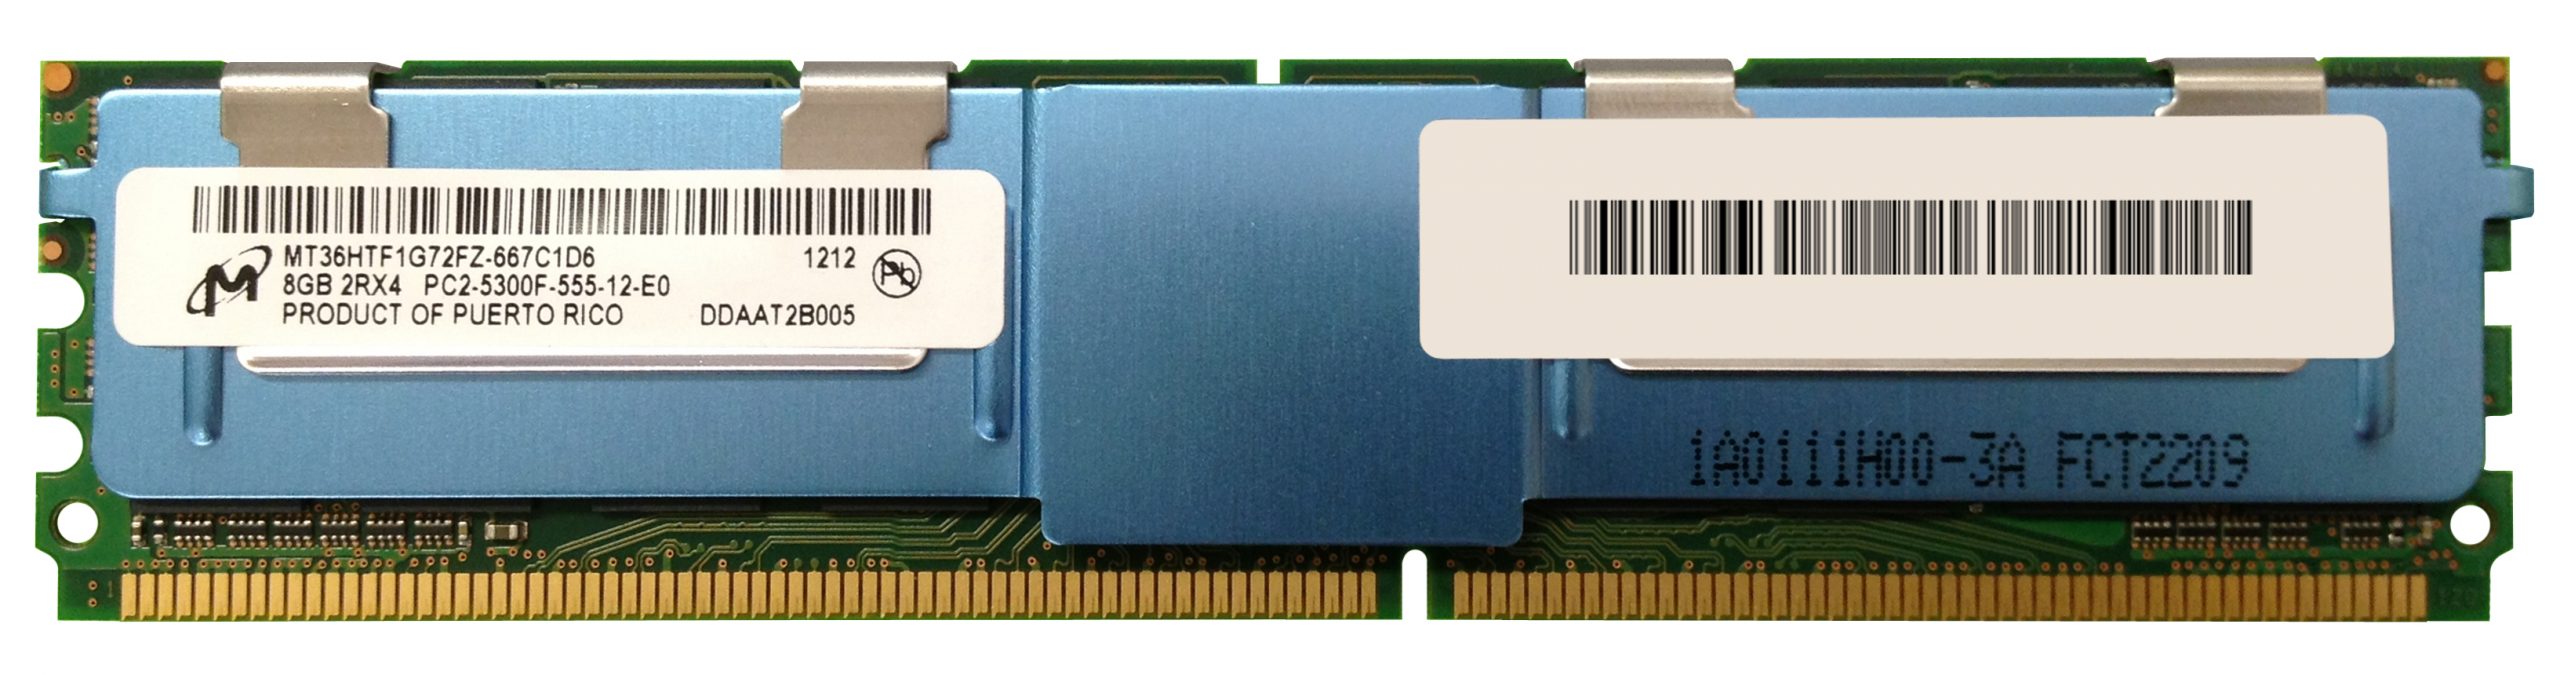 MICRON 8GB DDR2-667 FBDIMM 2Rx4 etc PC2-5300F MT36HTF1G72FZ-667C1D6